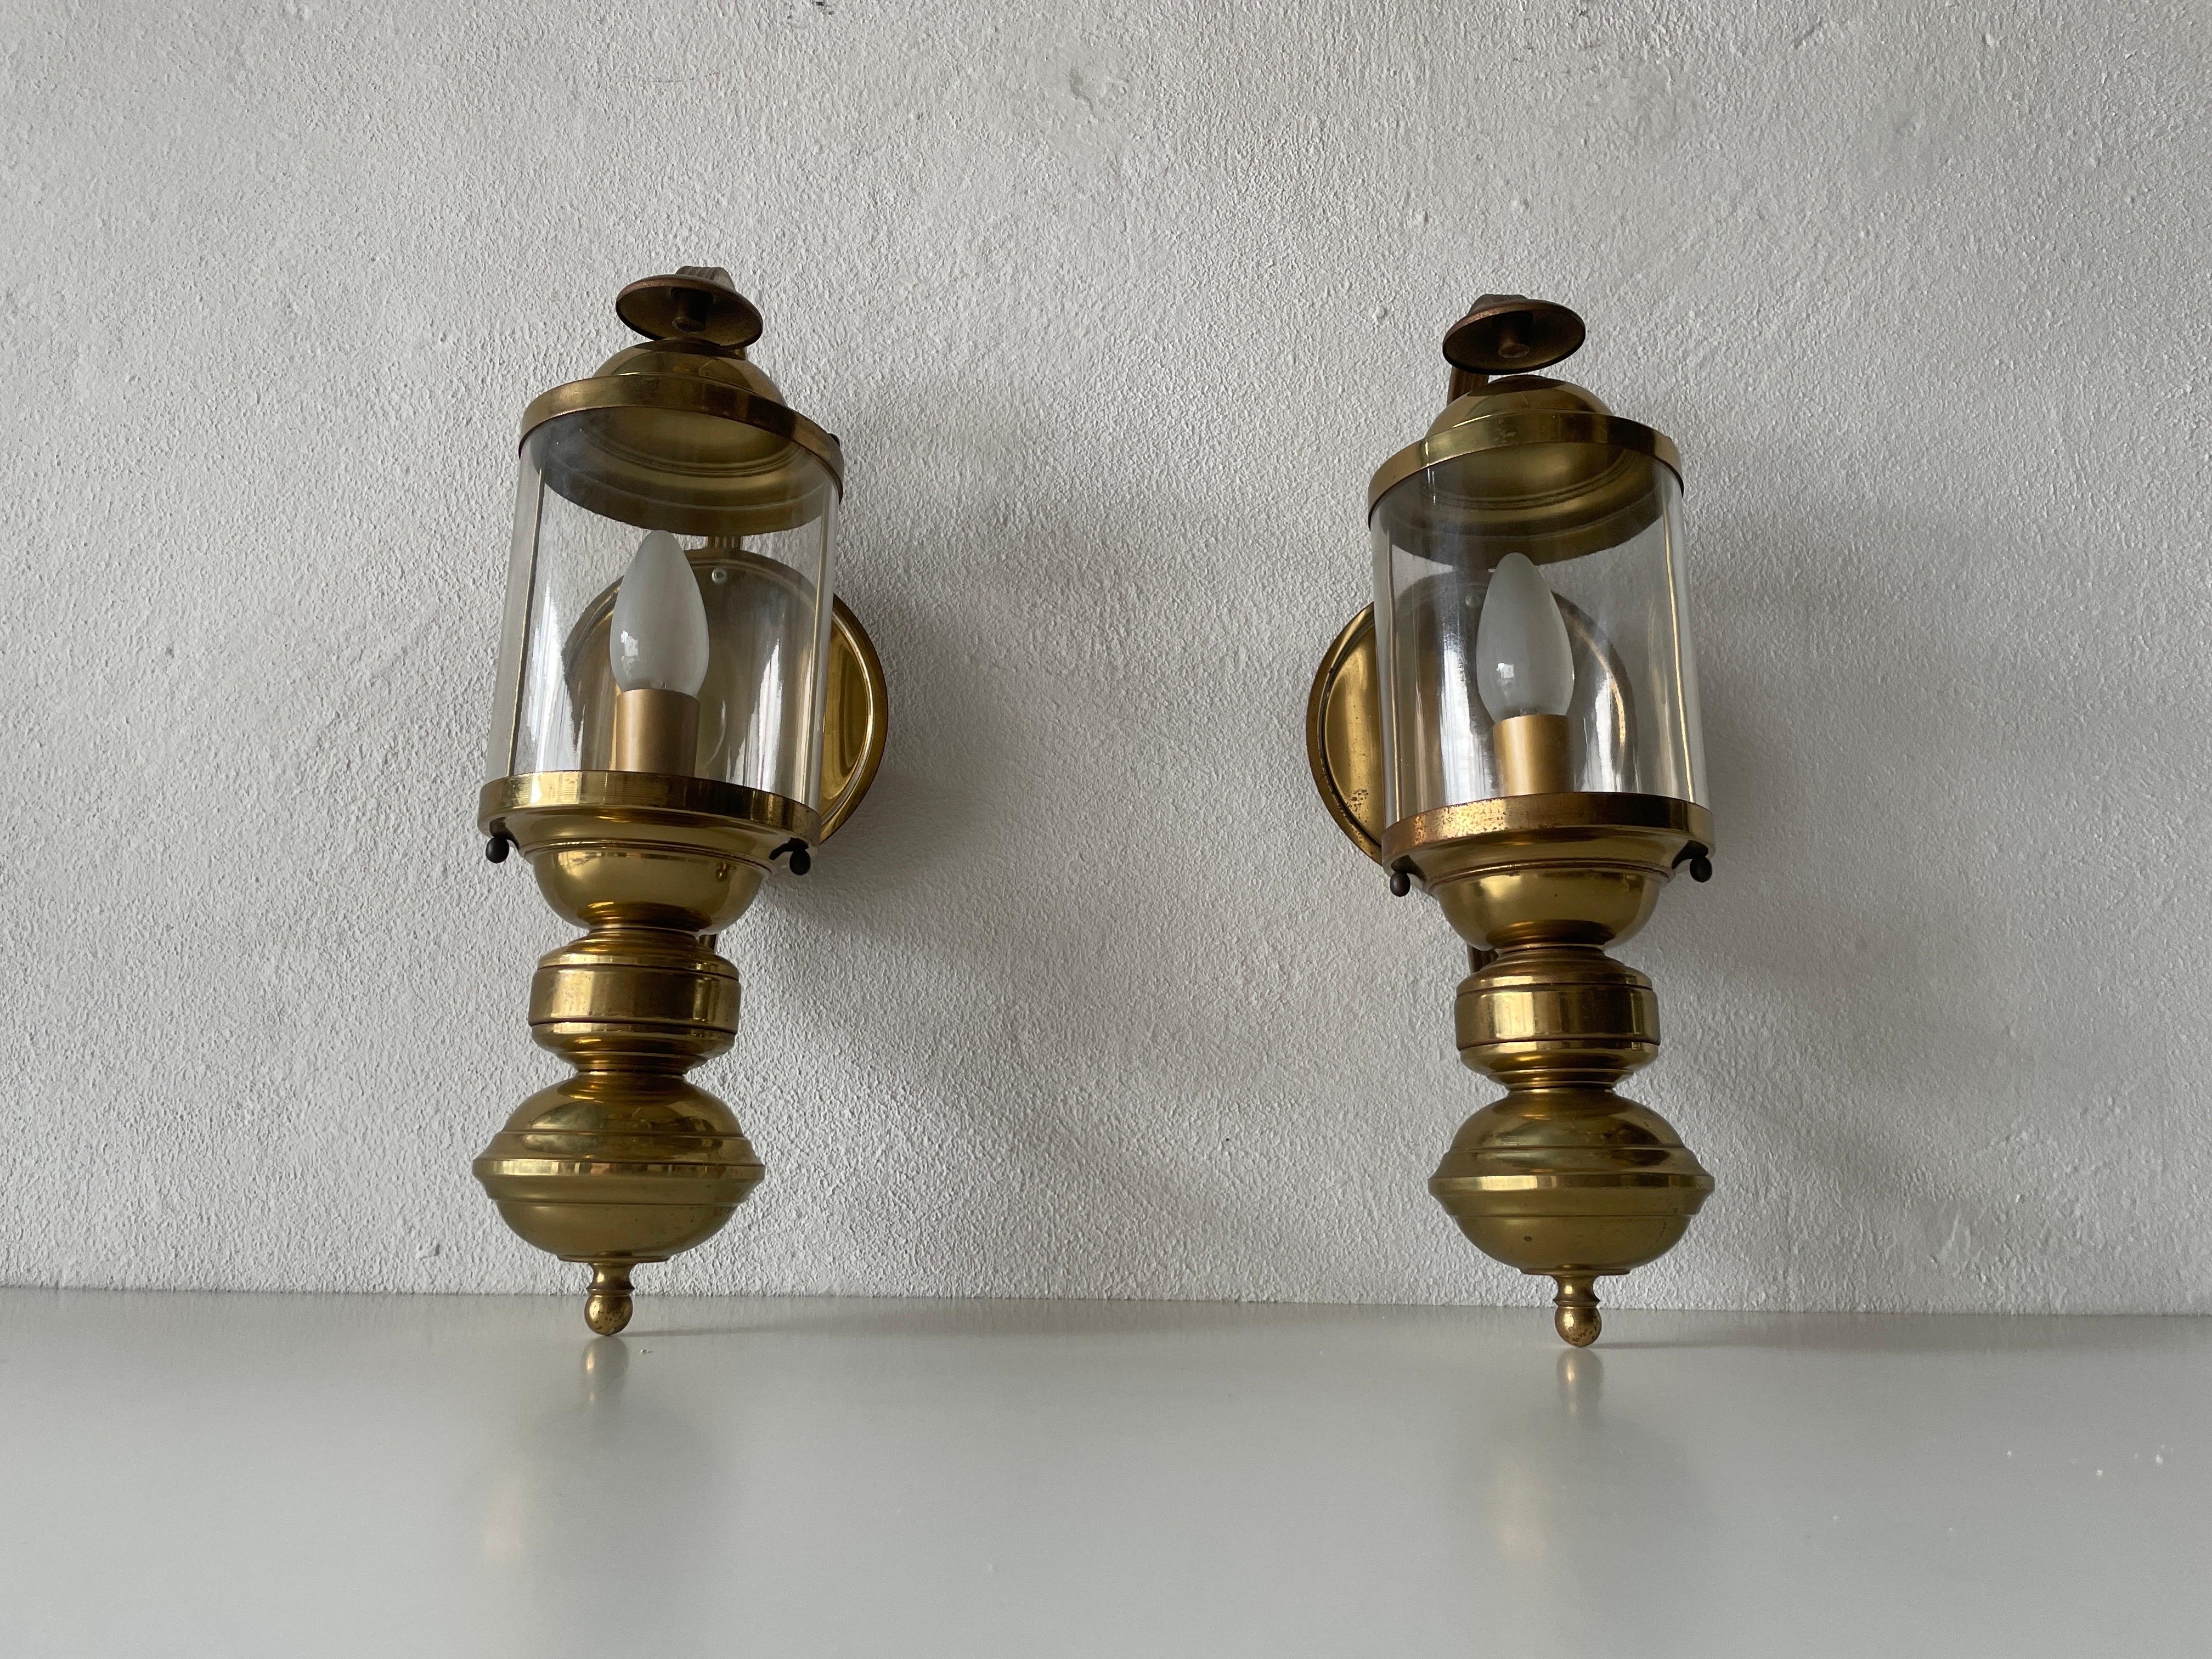 Paire d'appliques en laiton et verre, 1970, Allemagne

Des appliques très élégantes et minimalistes.

Les lampes sont en très bon état.

Ces lampes fonctionnent avec des ampoules standard E14. Chaque lampe fonctionne avec une ampoule. Max 100W
Câblé